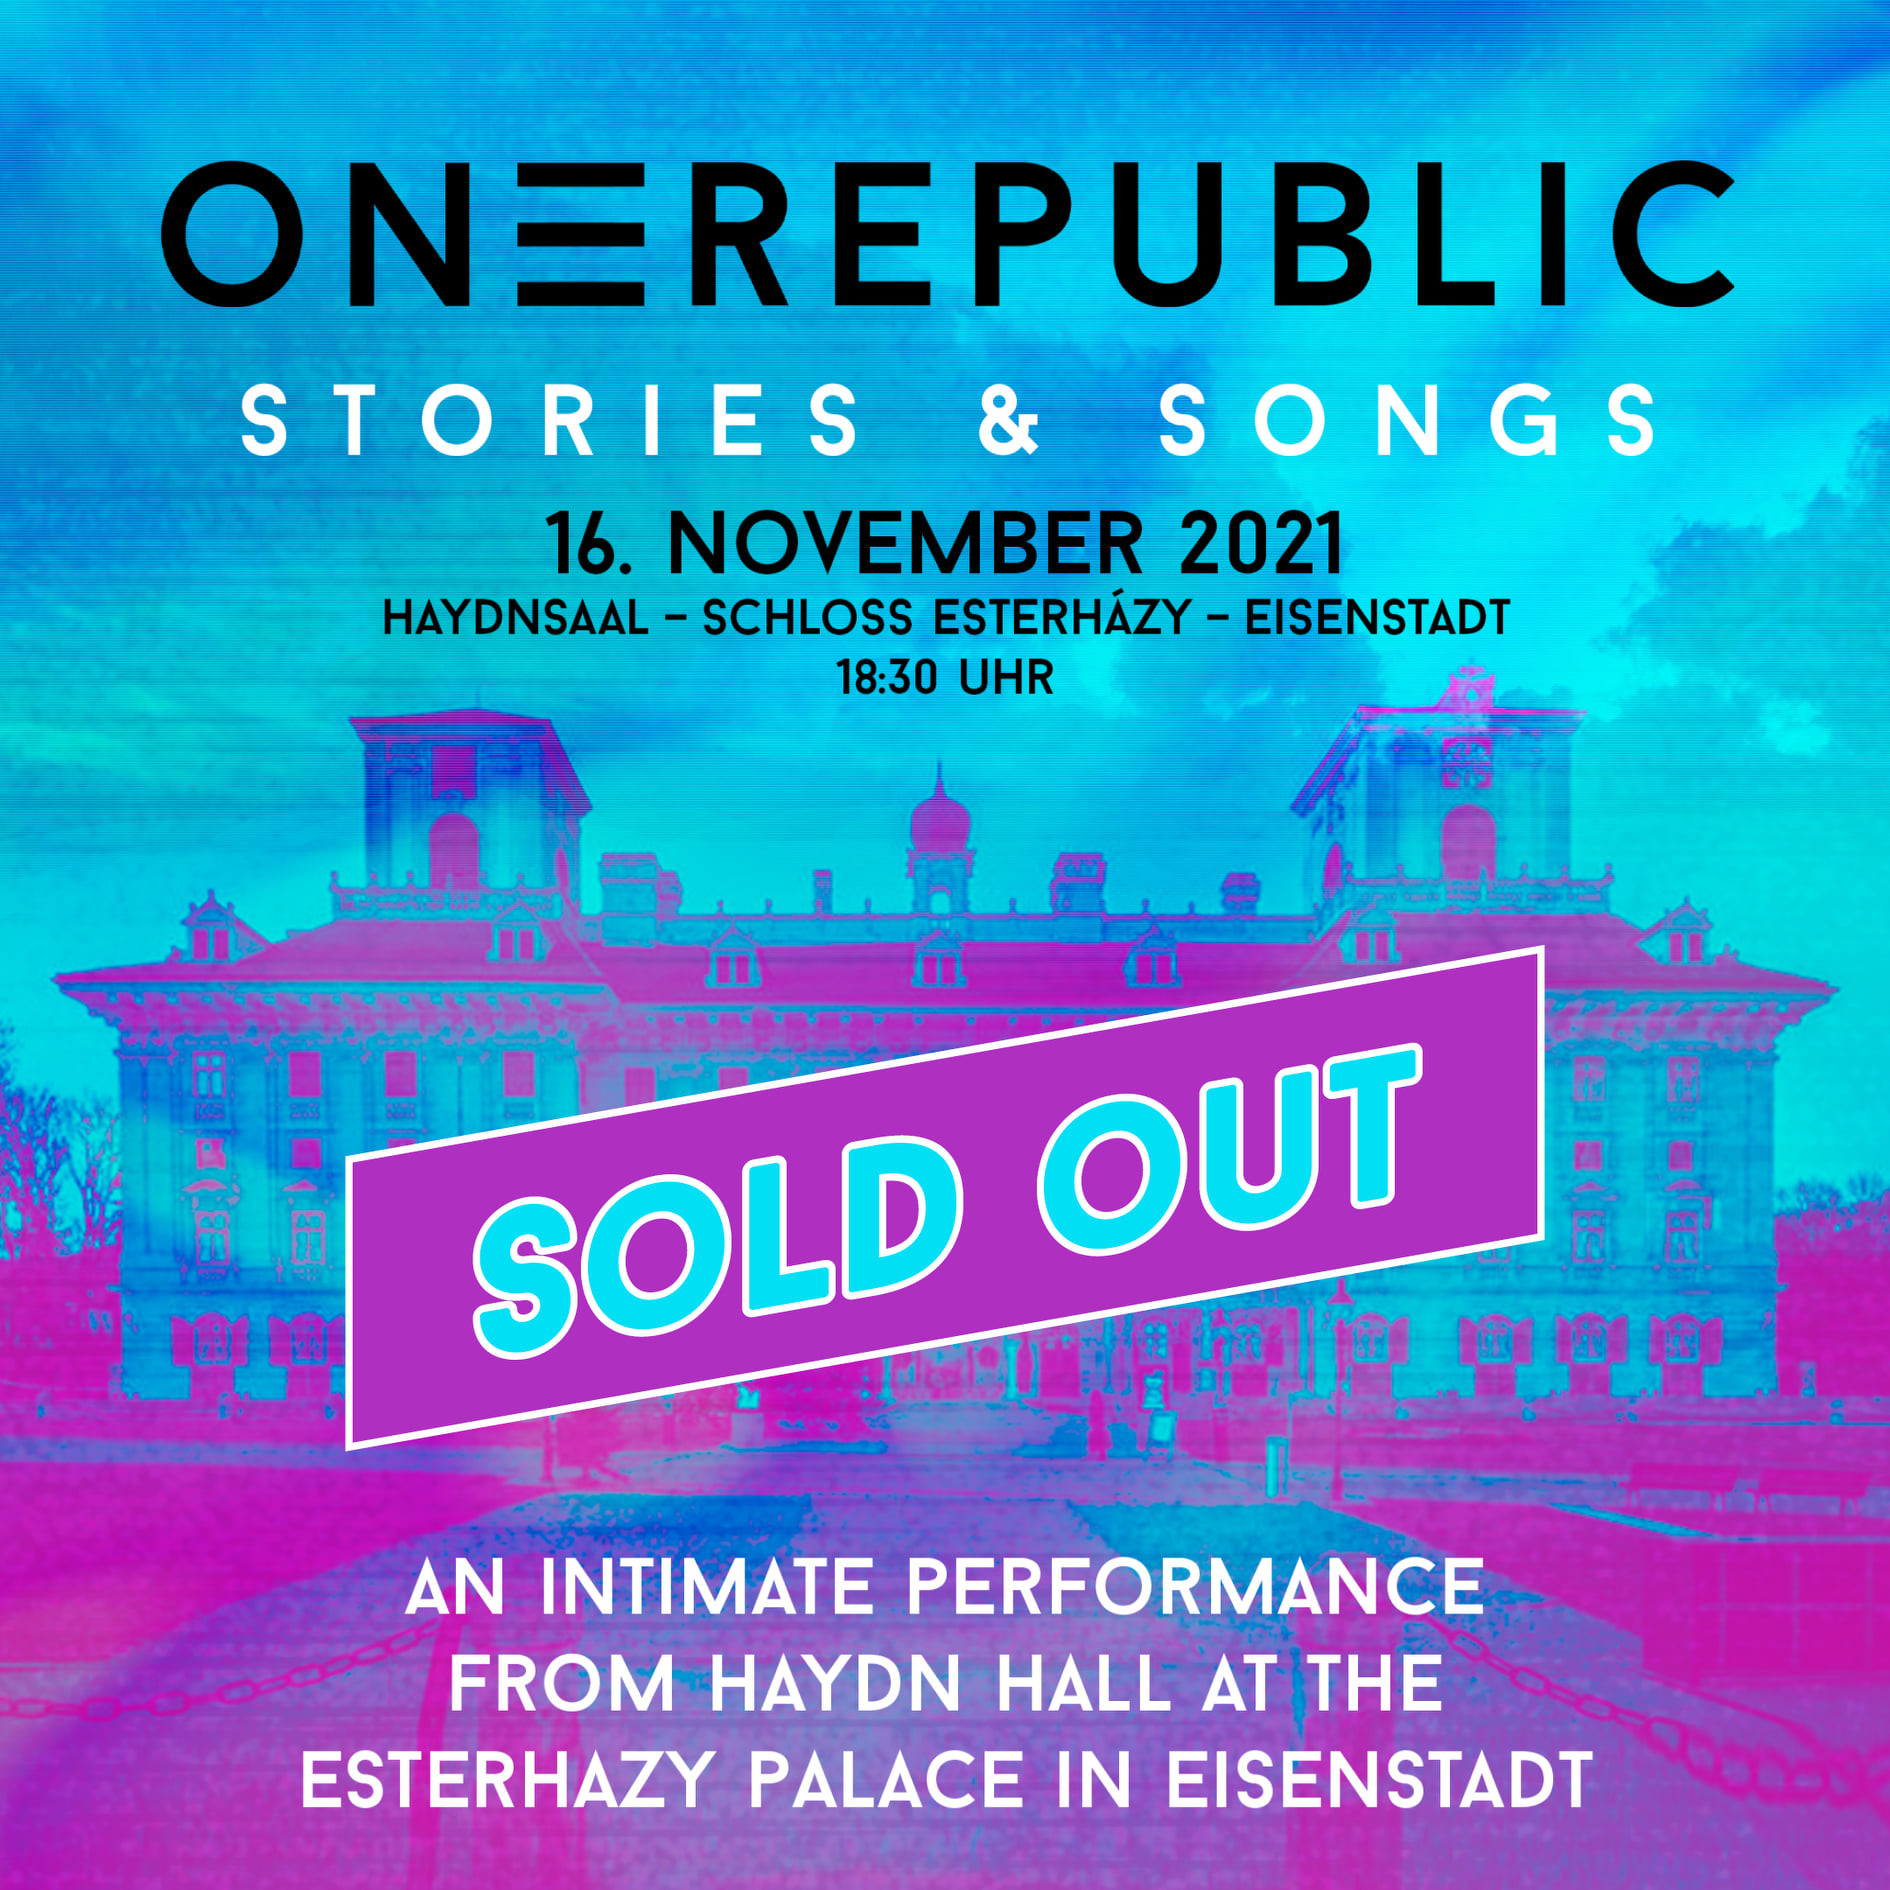 OneRepublic - Stories & Songs am 16. November 2021 @ Schloss Esterházy - Haydnsaal.